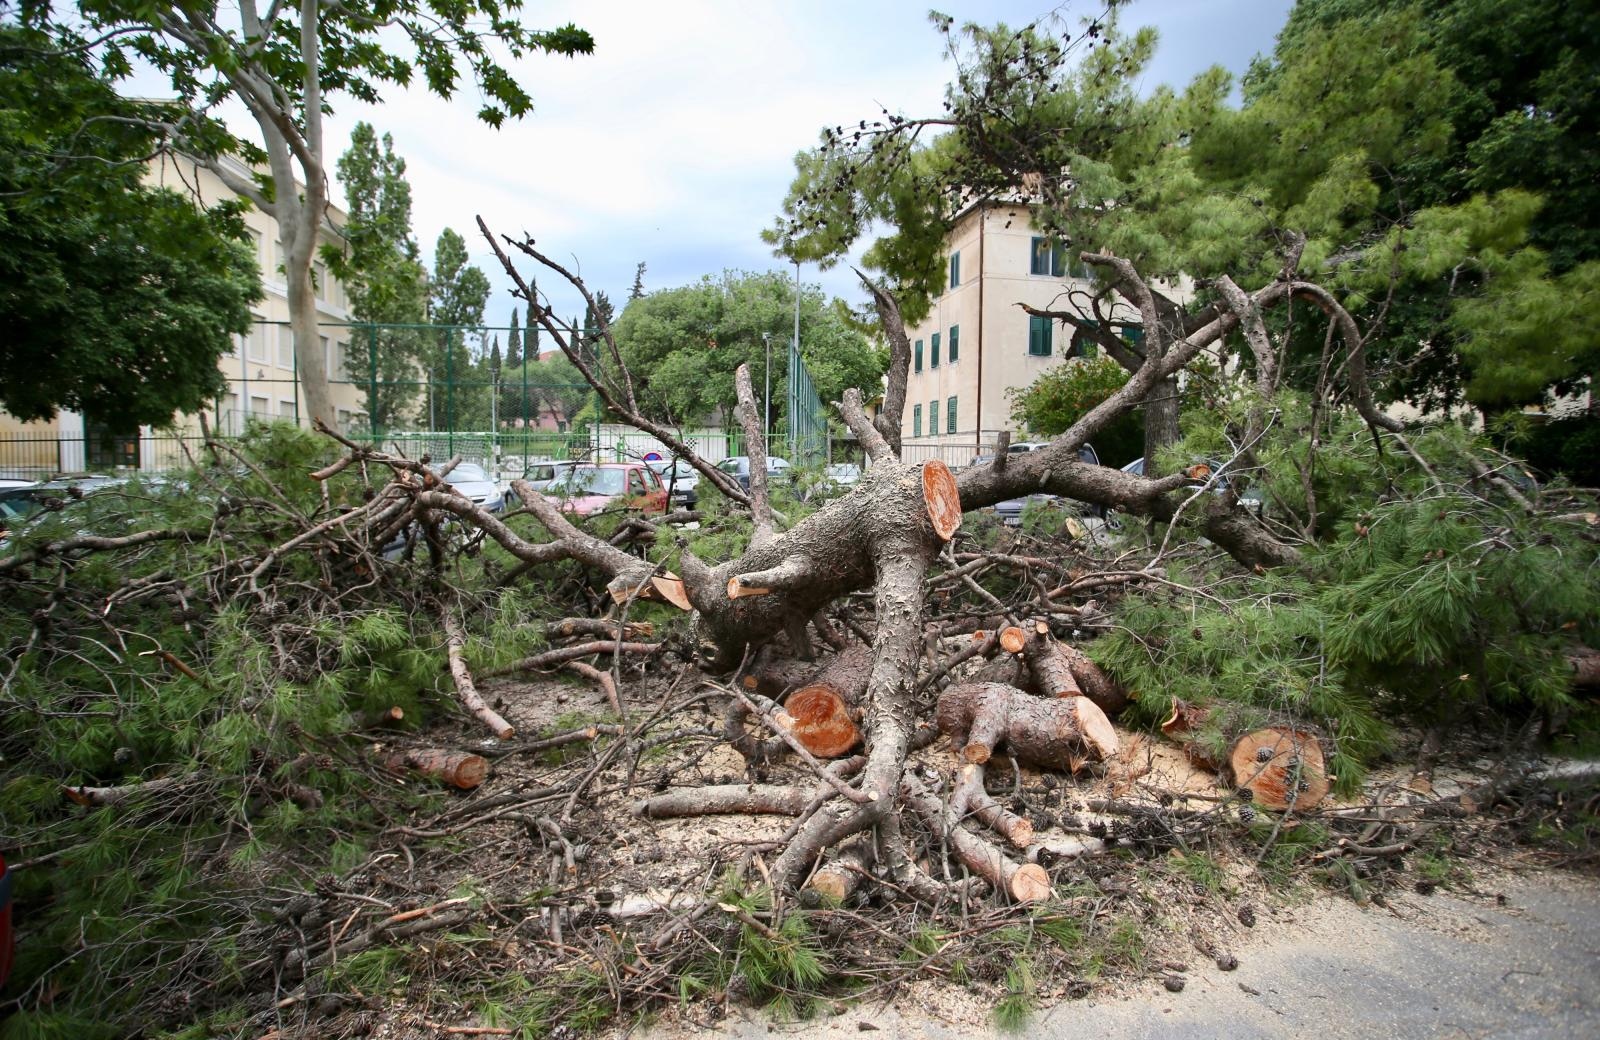 26.05.2019., Split - Nesto poslije ponoci srusila se dva stabla u Gajevoj ulici i ostetila nekoliko vozila.

Photo: Ivo Cagalj/PIXSELL